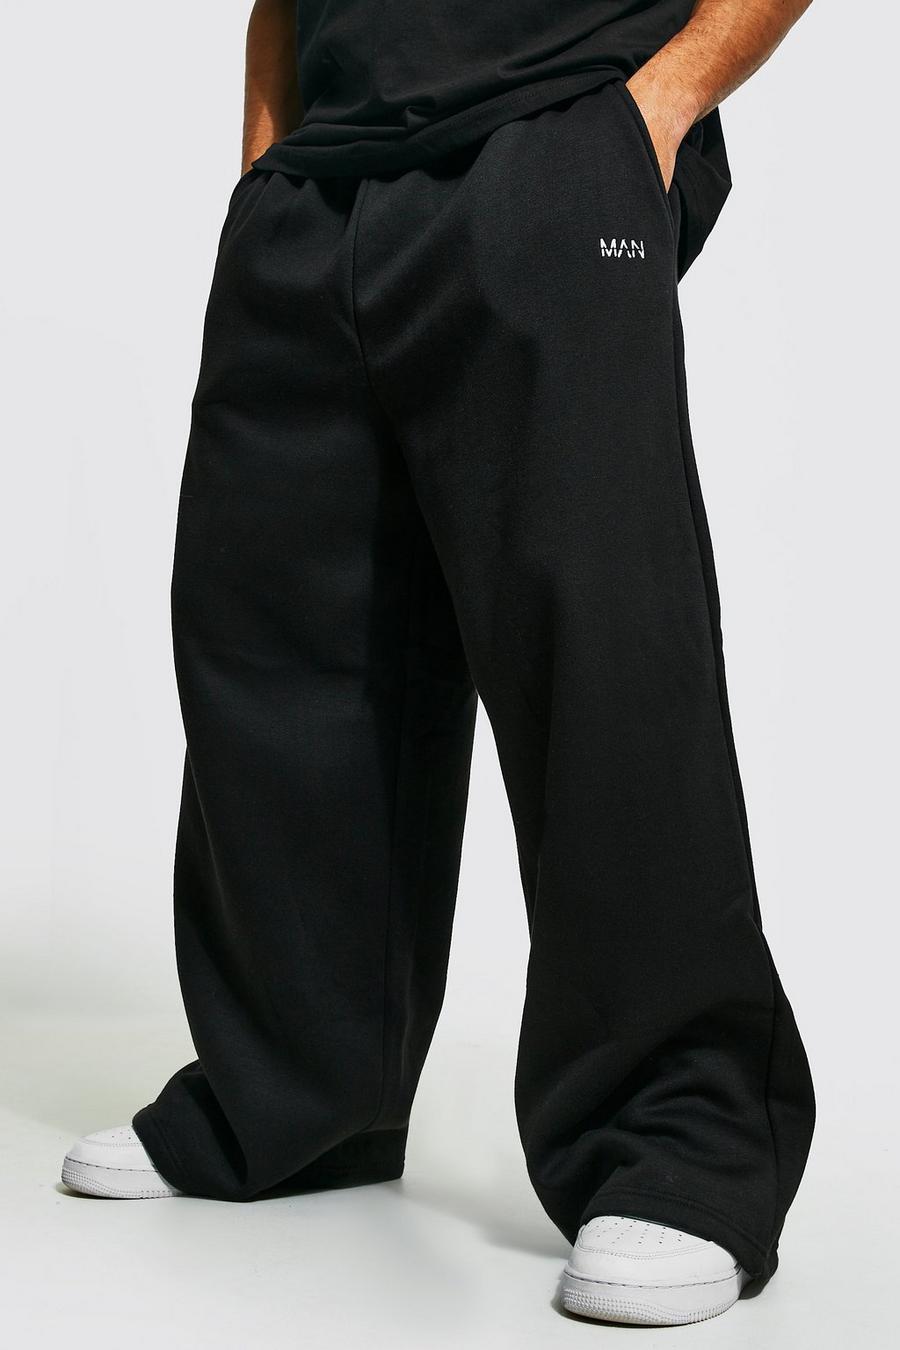 Pantalón deportivo MAN de pernera ancha extrema con bordado, Black nero image number 1